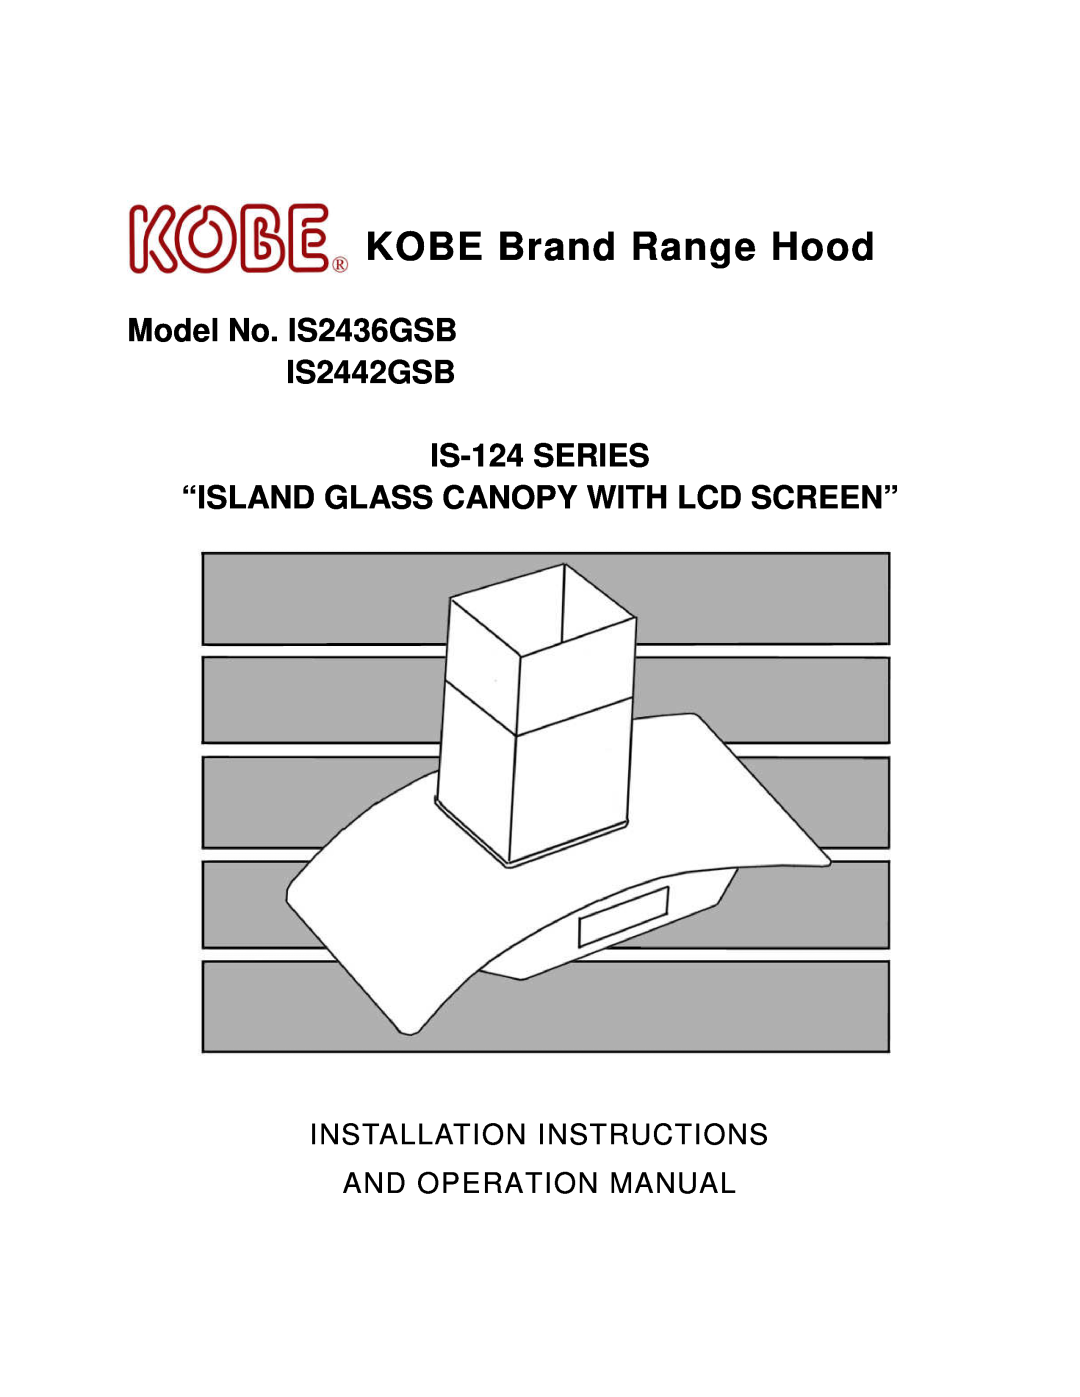 Kobe Range Hoods installation instructions KOBE Brand Range Hood, Model No. IS2436GSB IS2442GSB IS-124 SERIES 